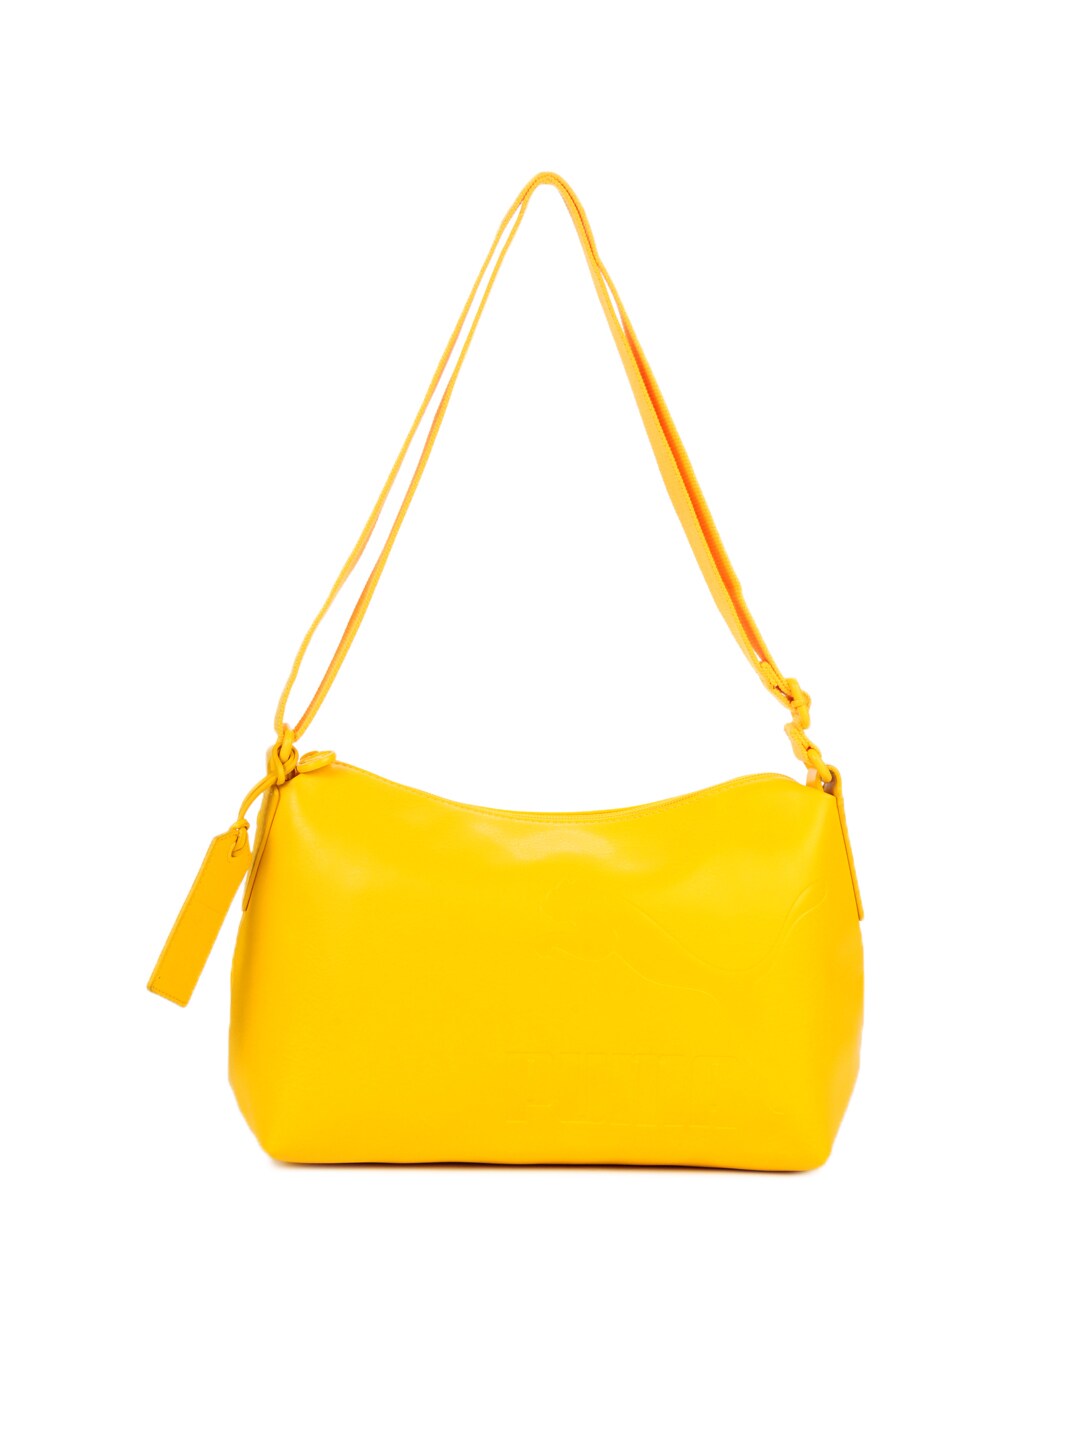 Puma Women Originals Mono Yellow Handbag